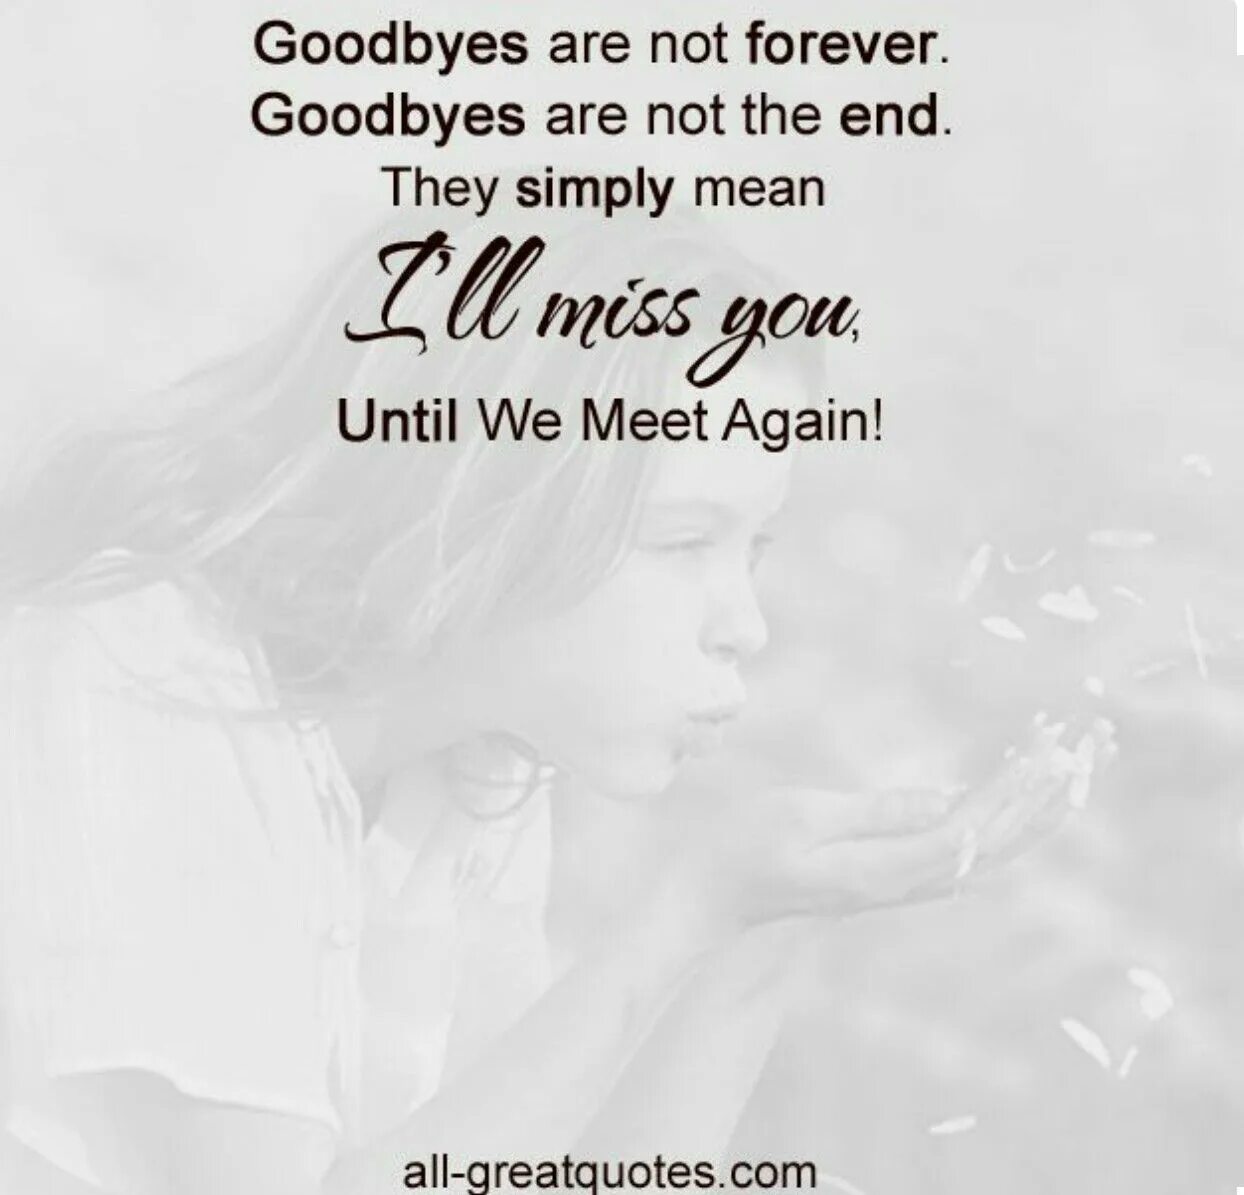 Until true. Goodbye Forever. Goodbye Eternity. The Eternal Goodbye картина. Картинки гудбай Форевер.